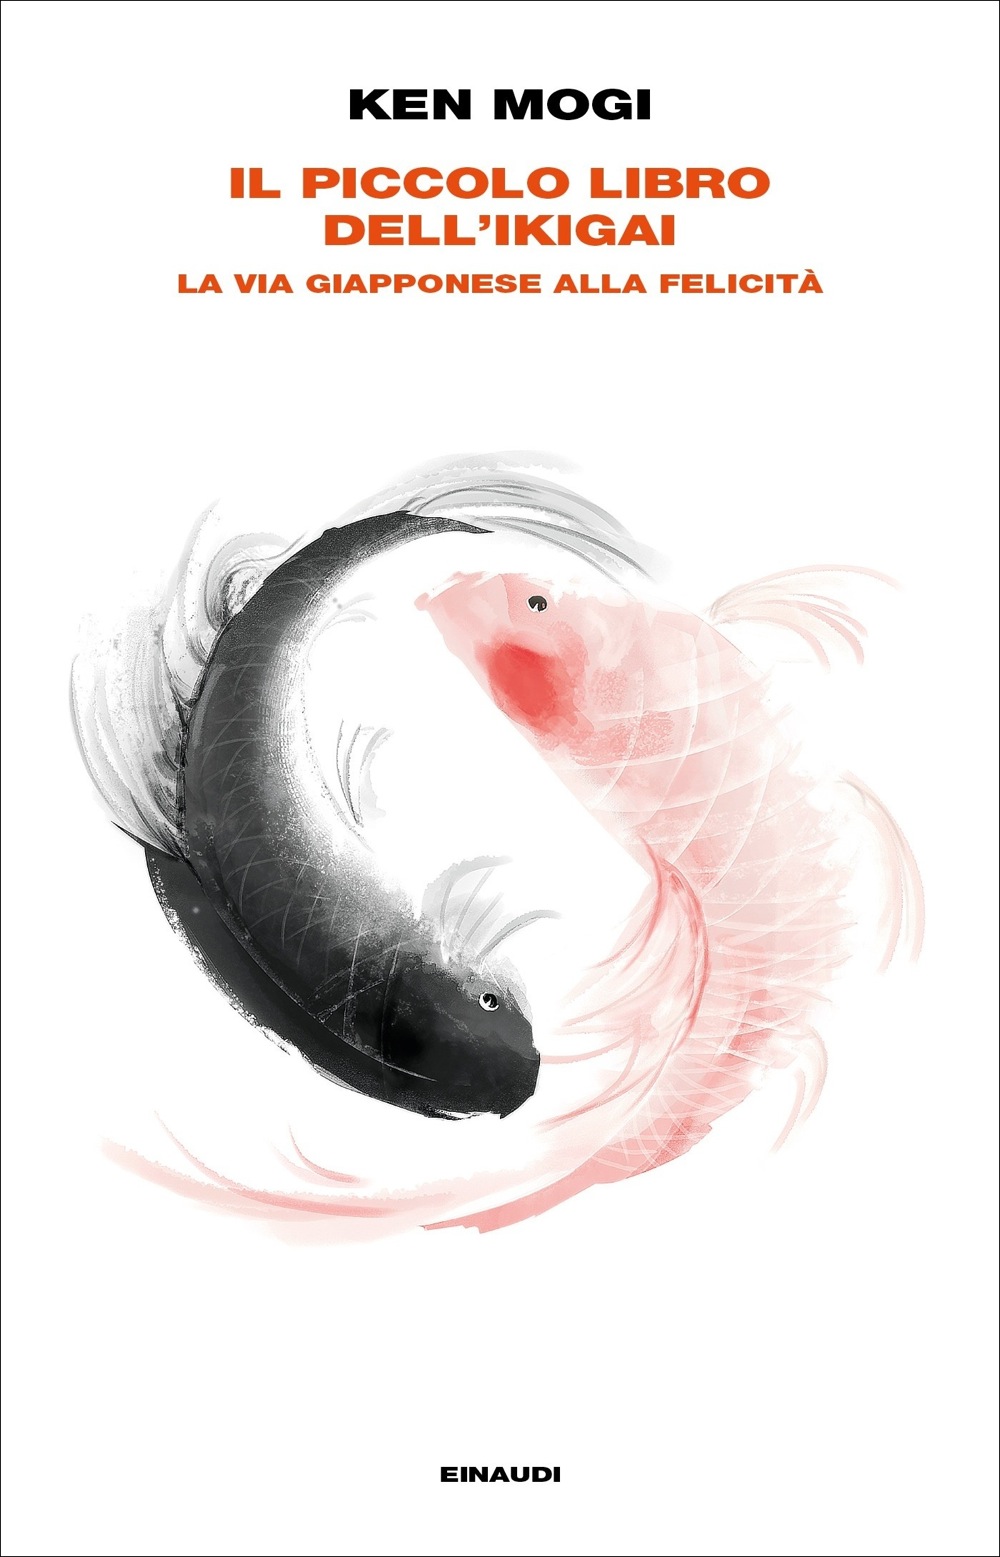 Il piccolo libro dell'ikigai, Ken Mogi. Giulio Einaudi editore - Frontiere